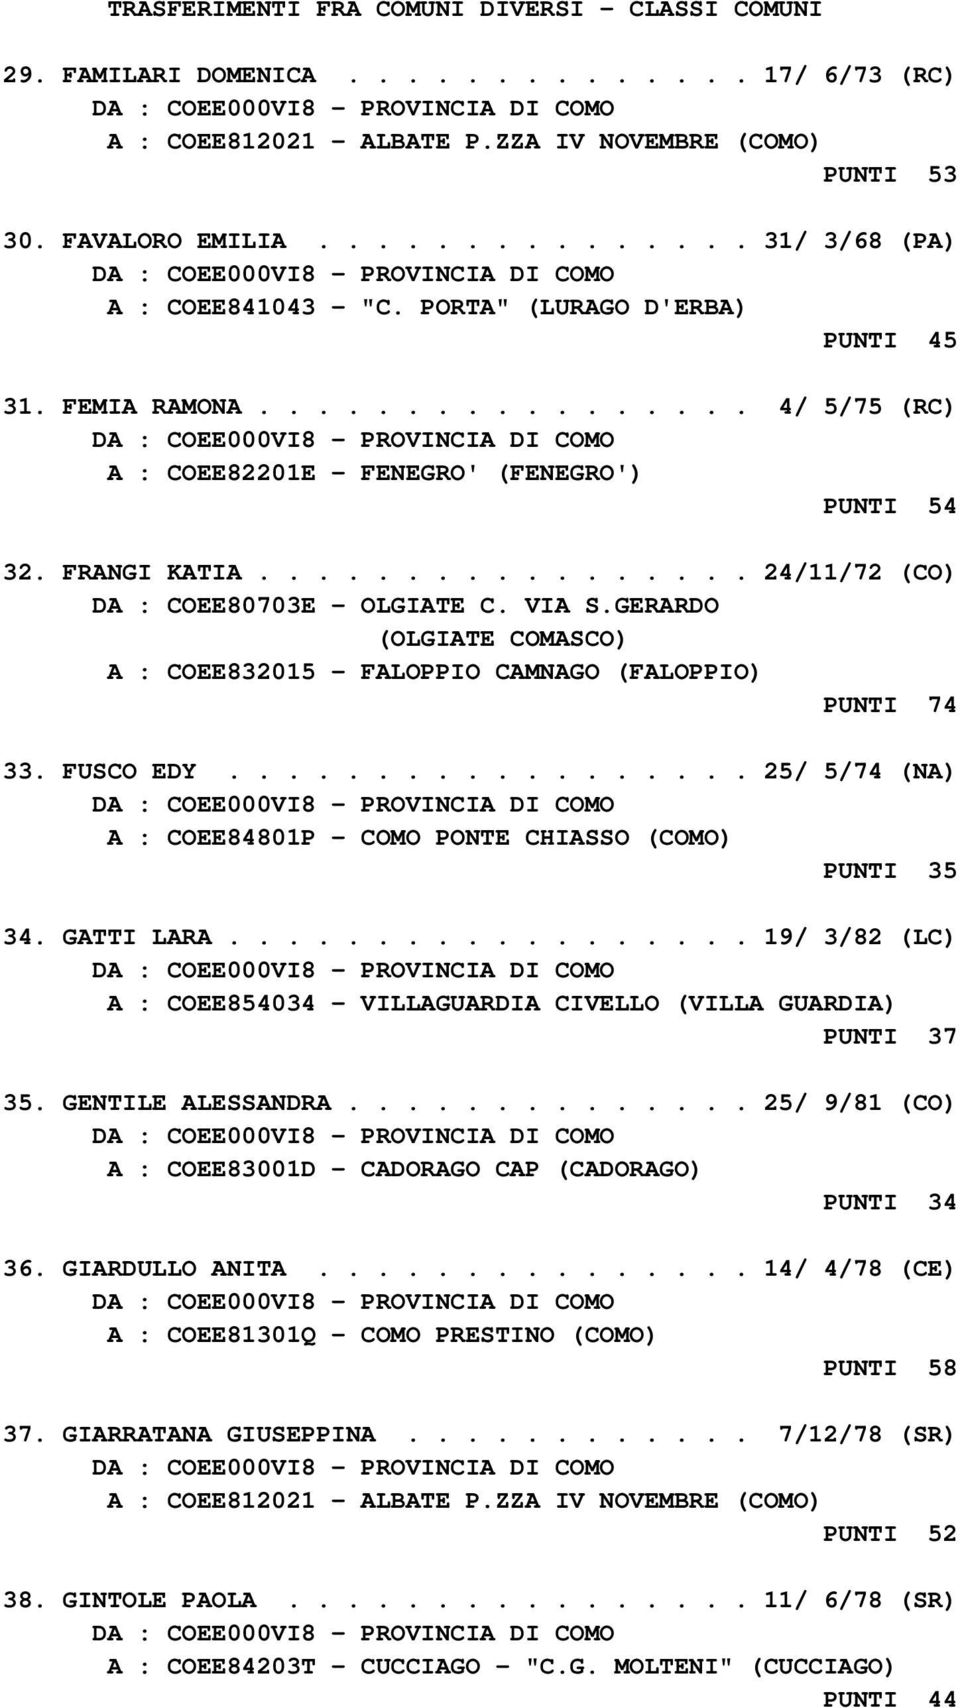 VIA S.GERARDO (OLGIATE COMASCO) A : COEE832015 - FALOPPIO CAMNAGO (FALOPPIO) PUNTI 74 33. FUSCO EDY.................. 25/ 5/74 (NA) A : COEE84801P - COMO PONTE CHIASSO (COMO) PUNTI 35 34. GATTI LARA.